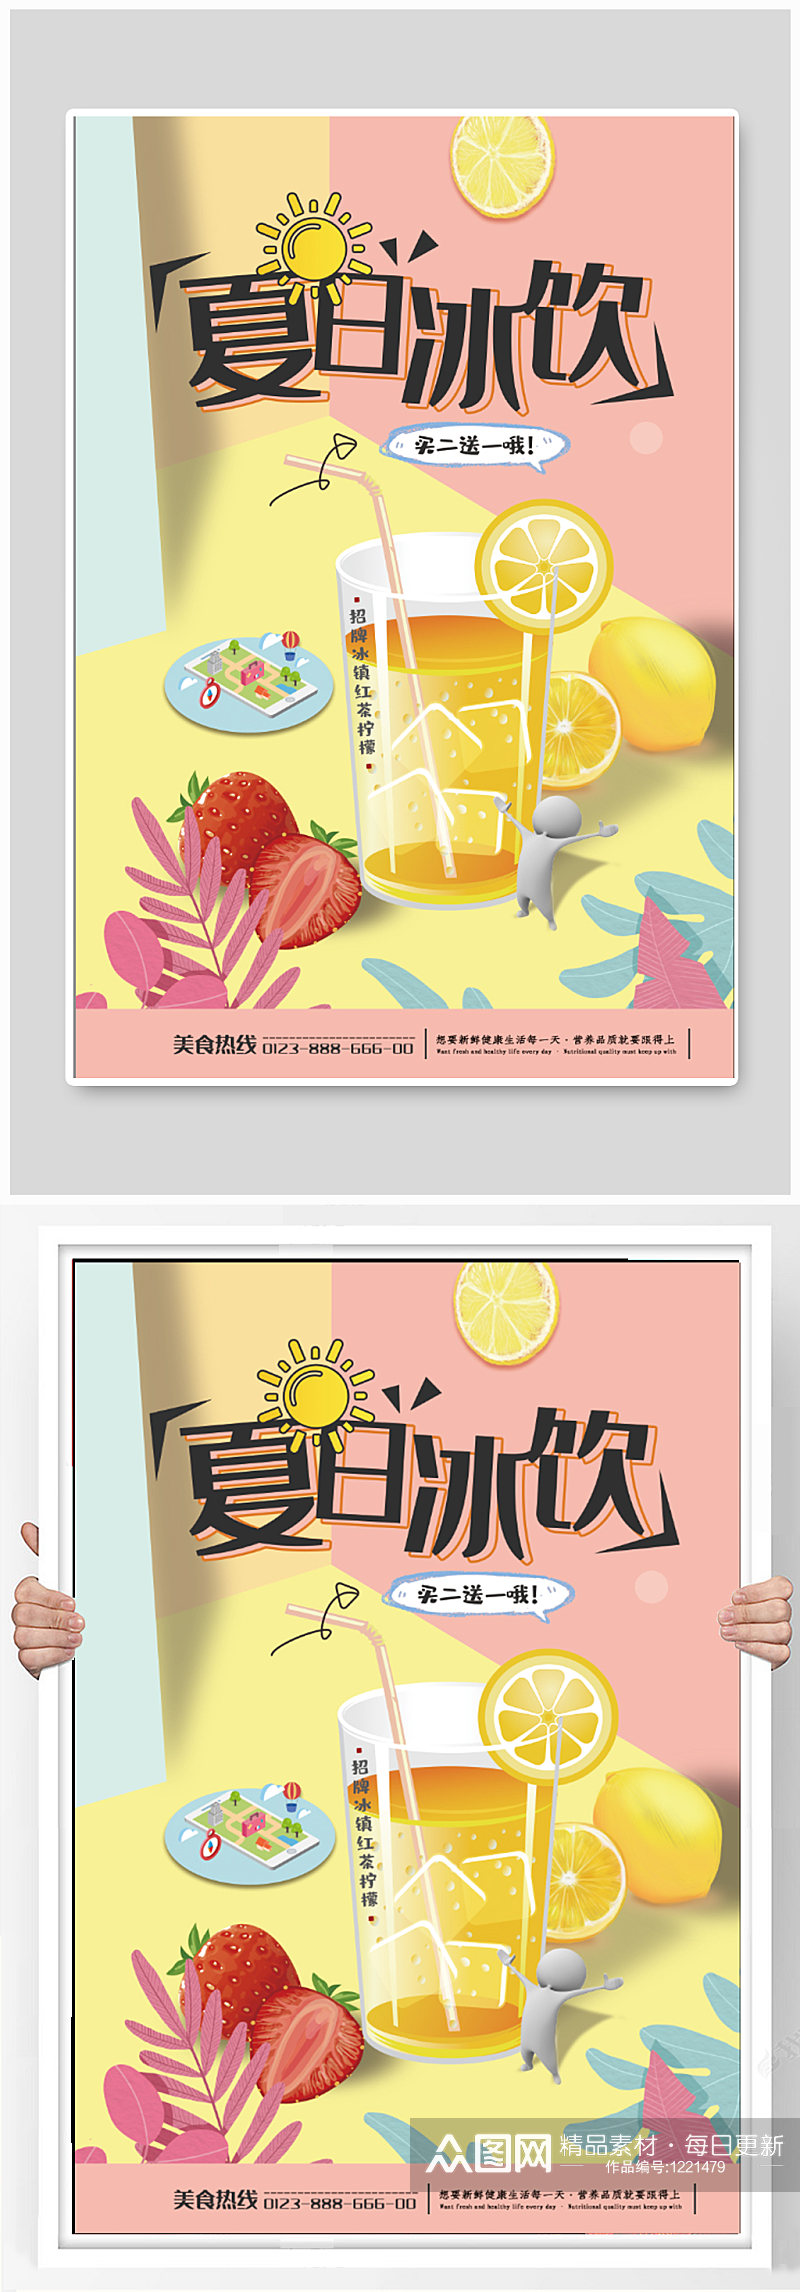 夏日饮品宣传海报素材